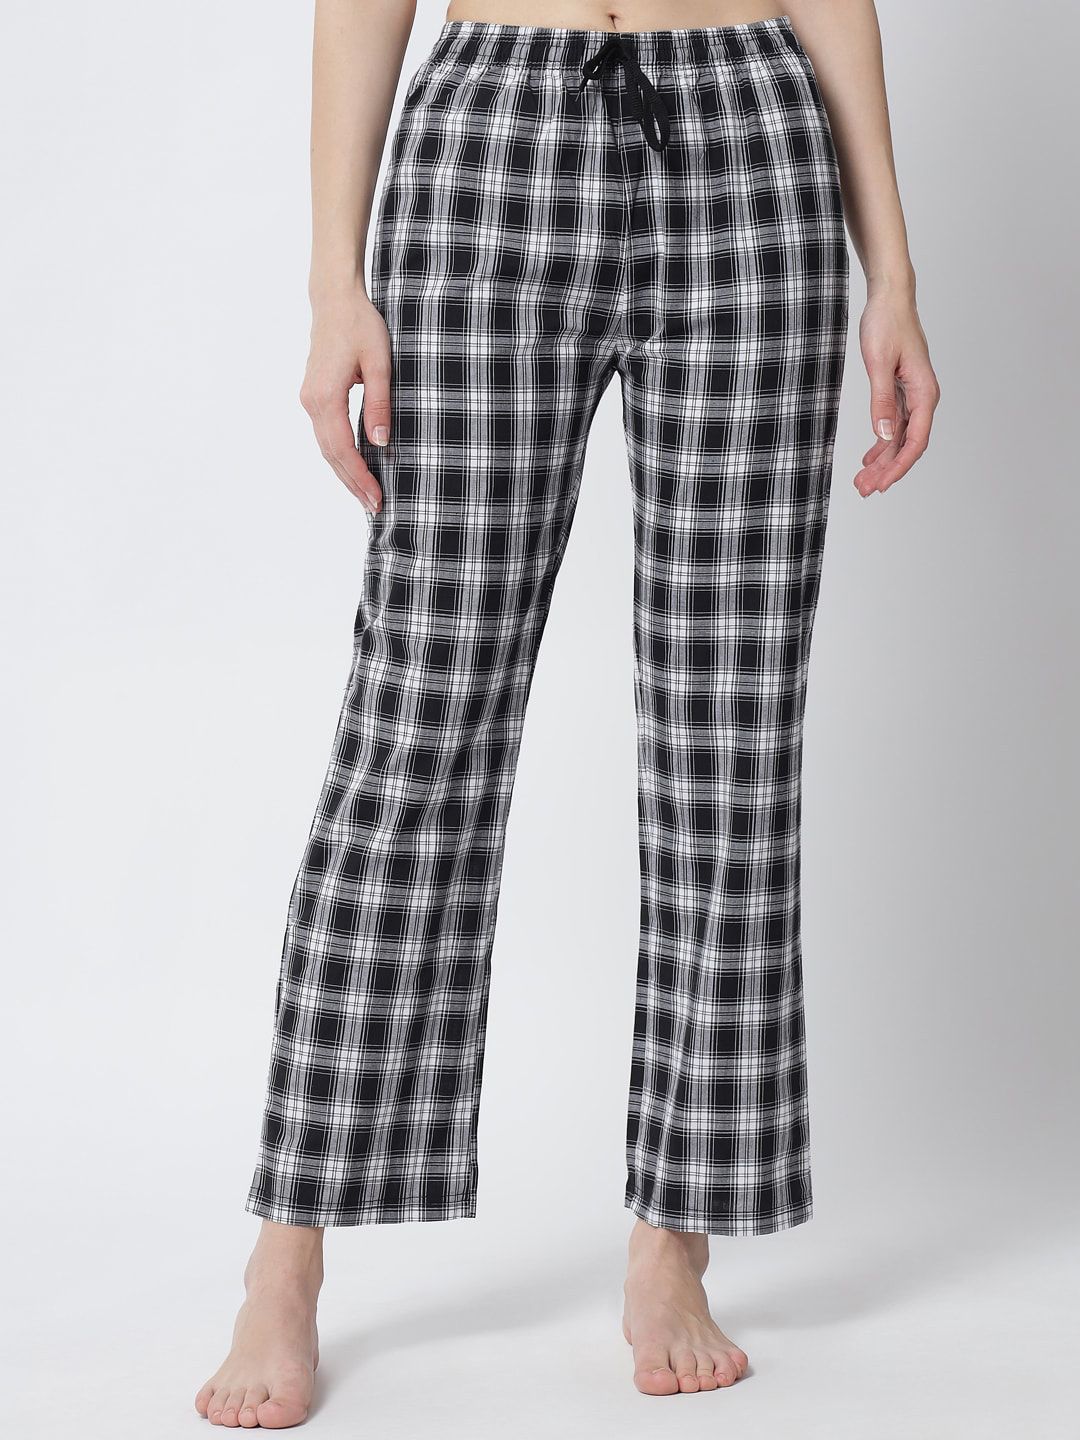 FFLIRTYGO Women Black & White Checked Cotton Pyjamas Price in India